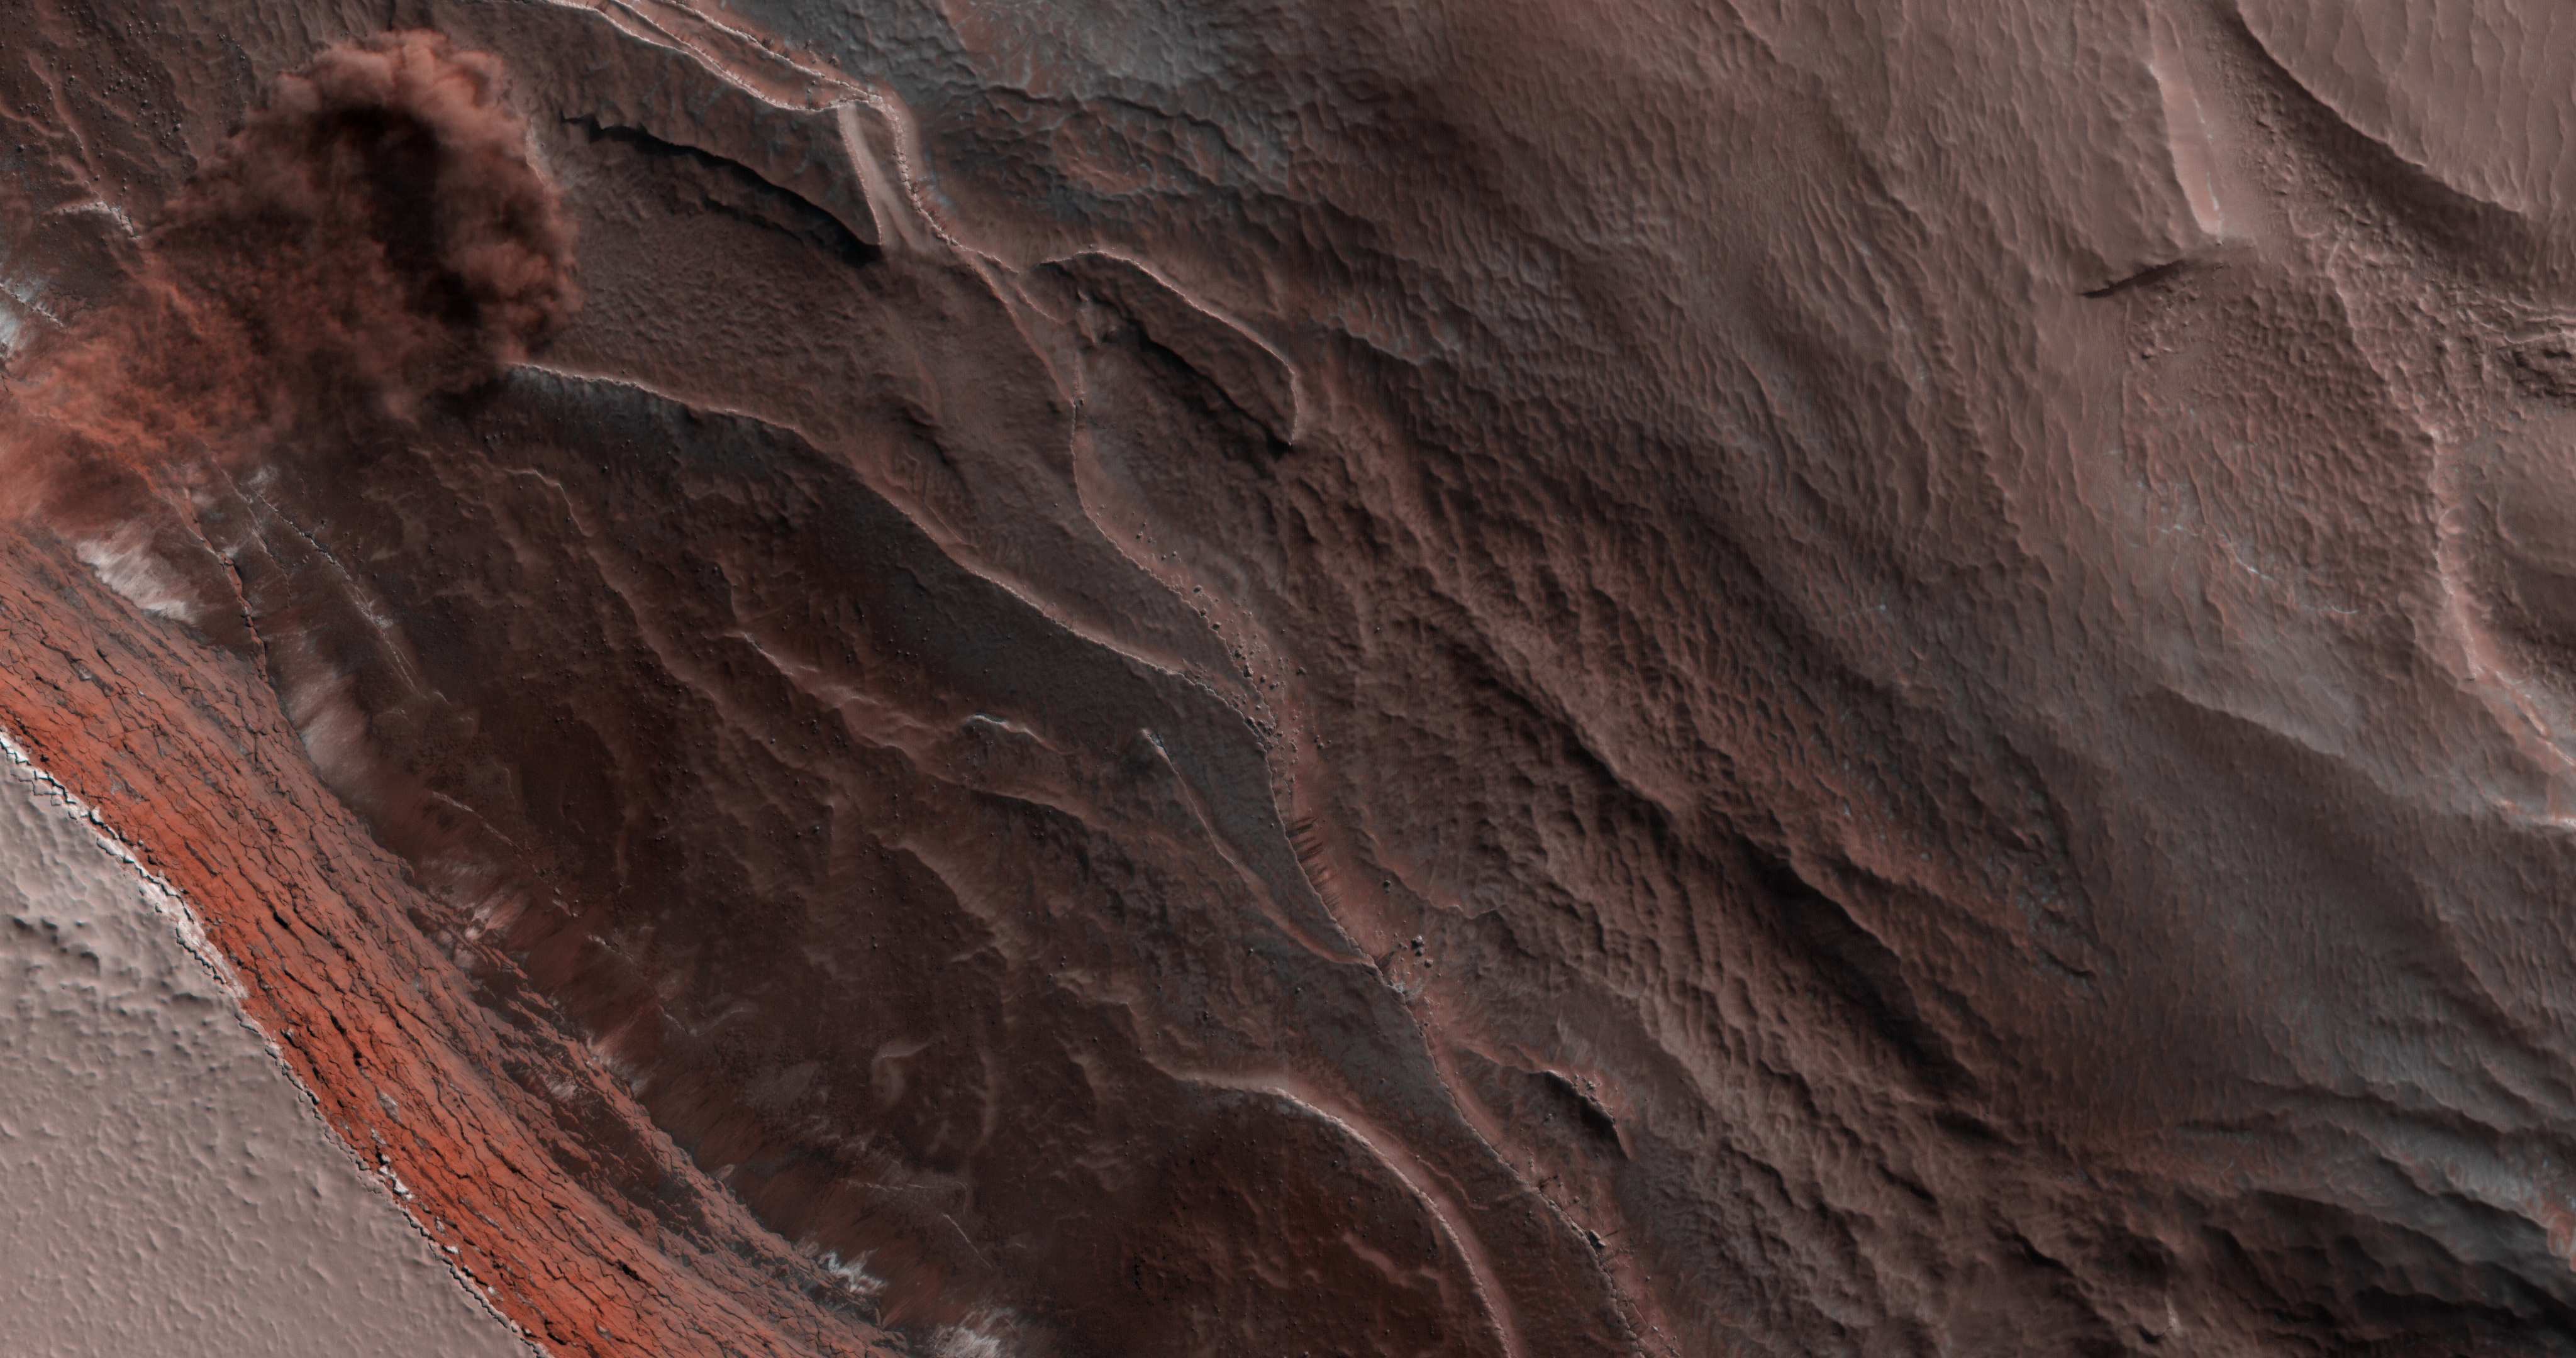 MATKA CHRZESTNA. NIESAMOWITE zdjęcie z Marsa, które ZSZOKOWAŁO lawinę Internetu